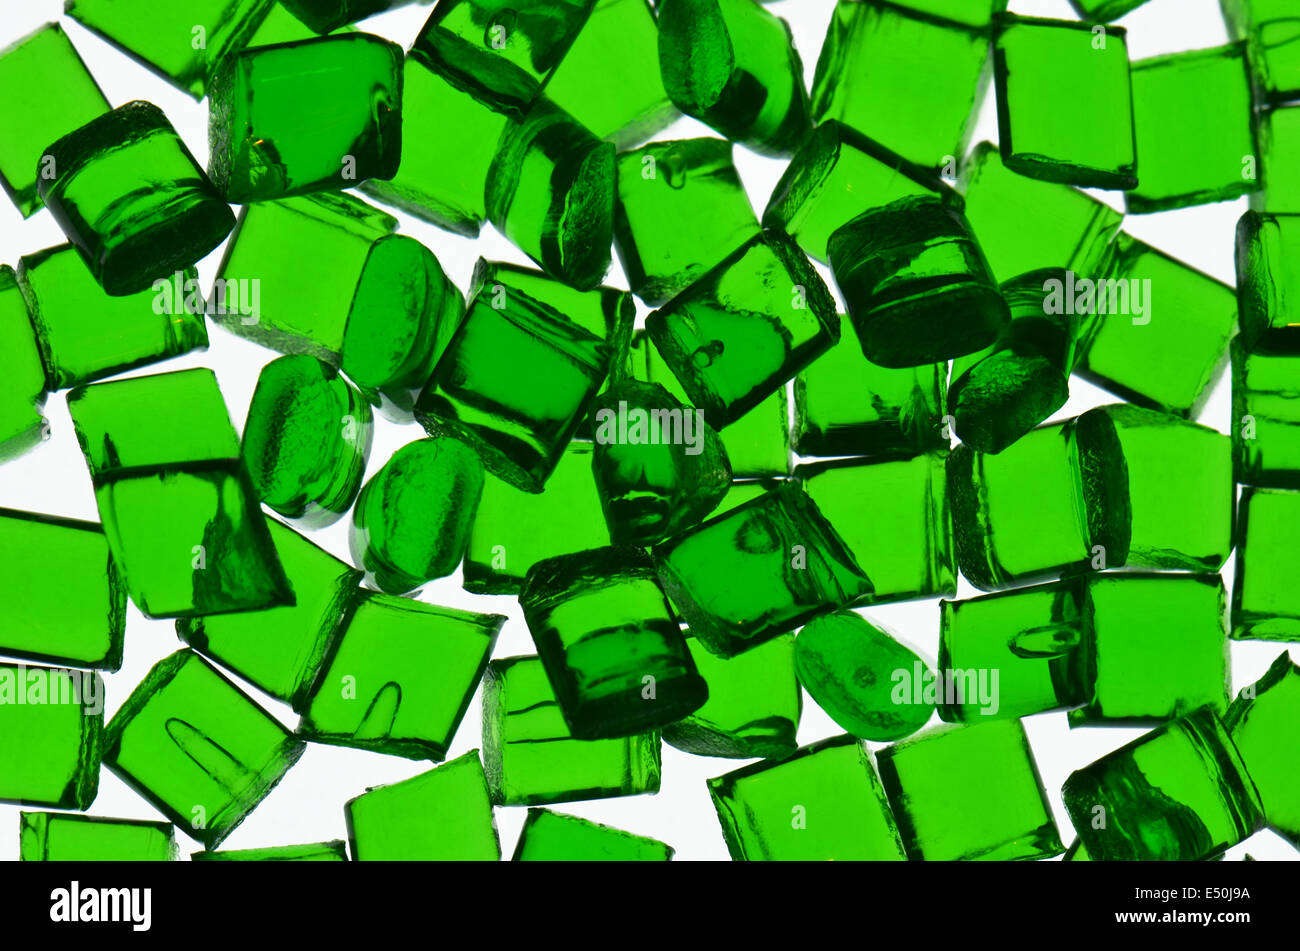 Resina de polímero transparente de color verde Foto de stock